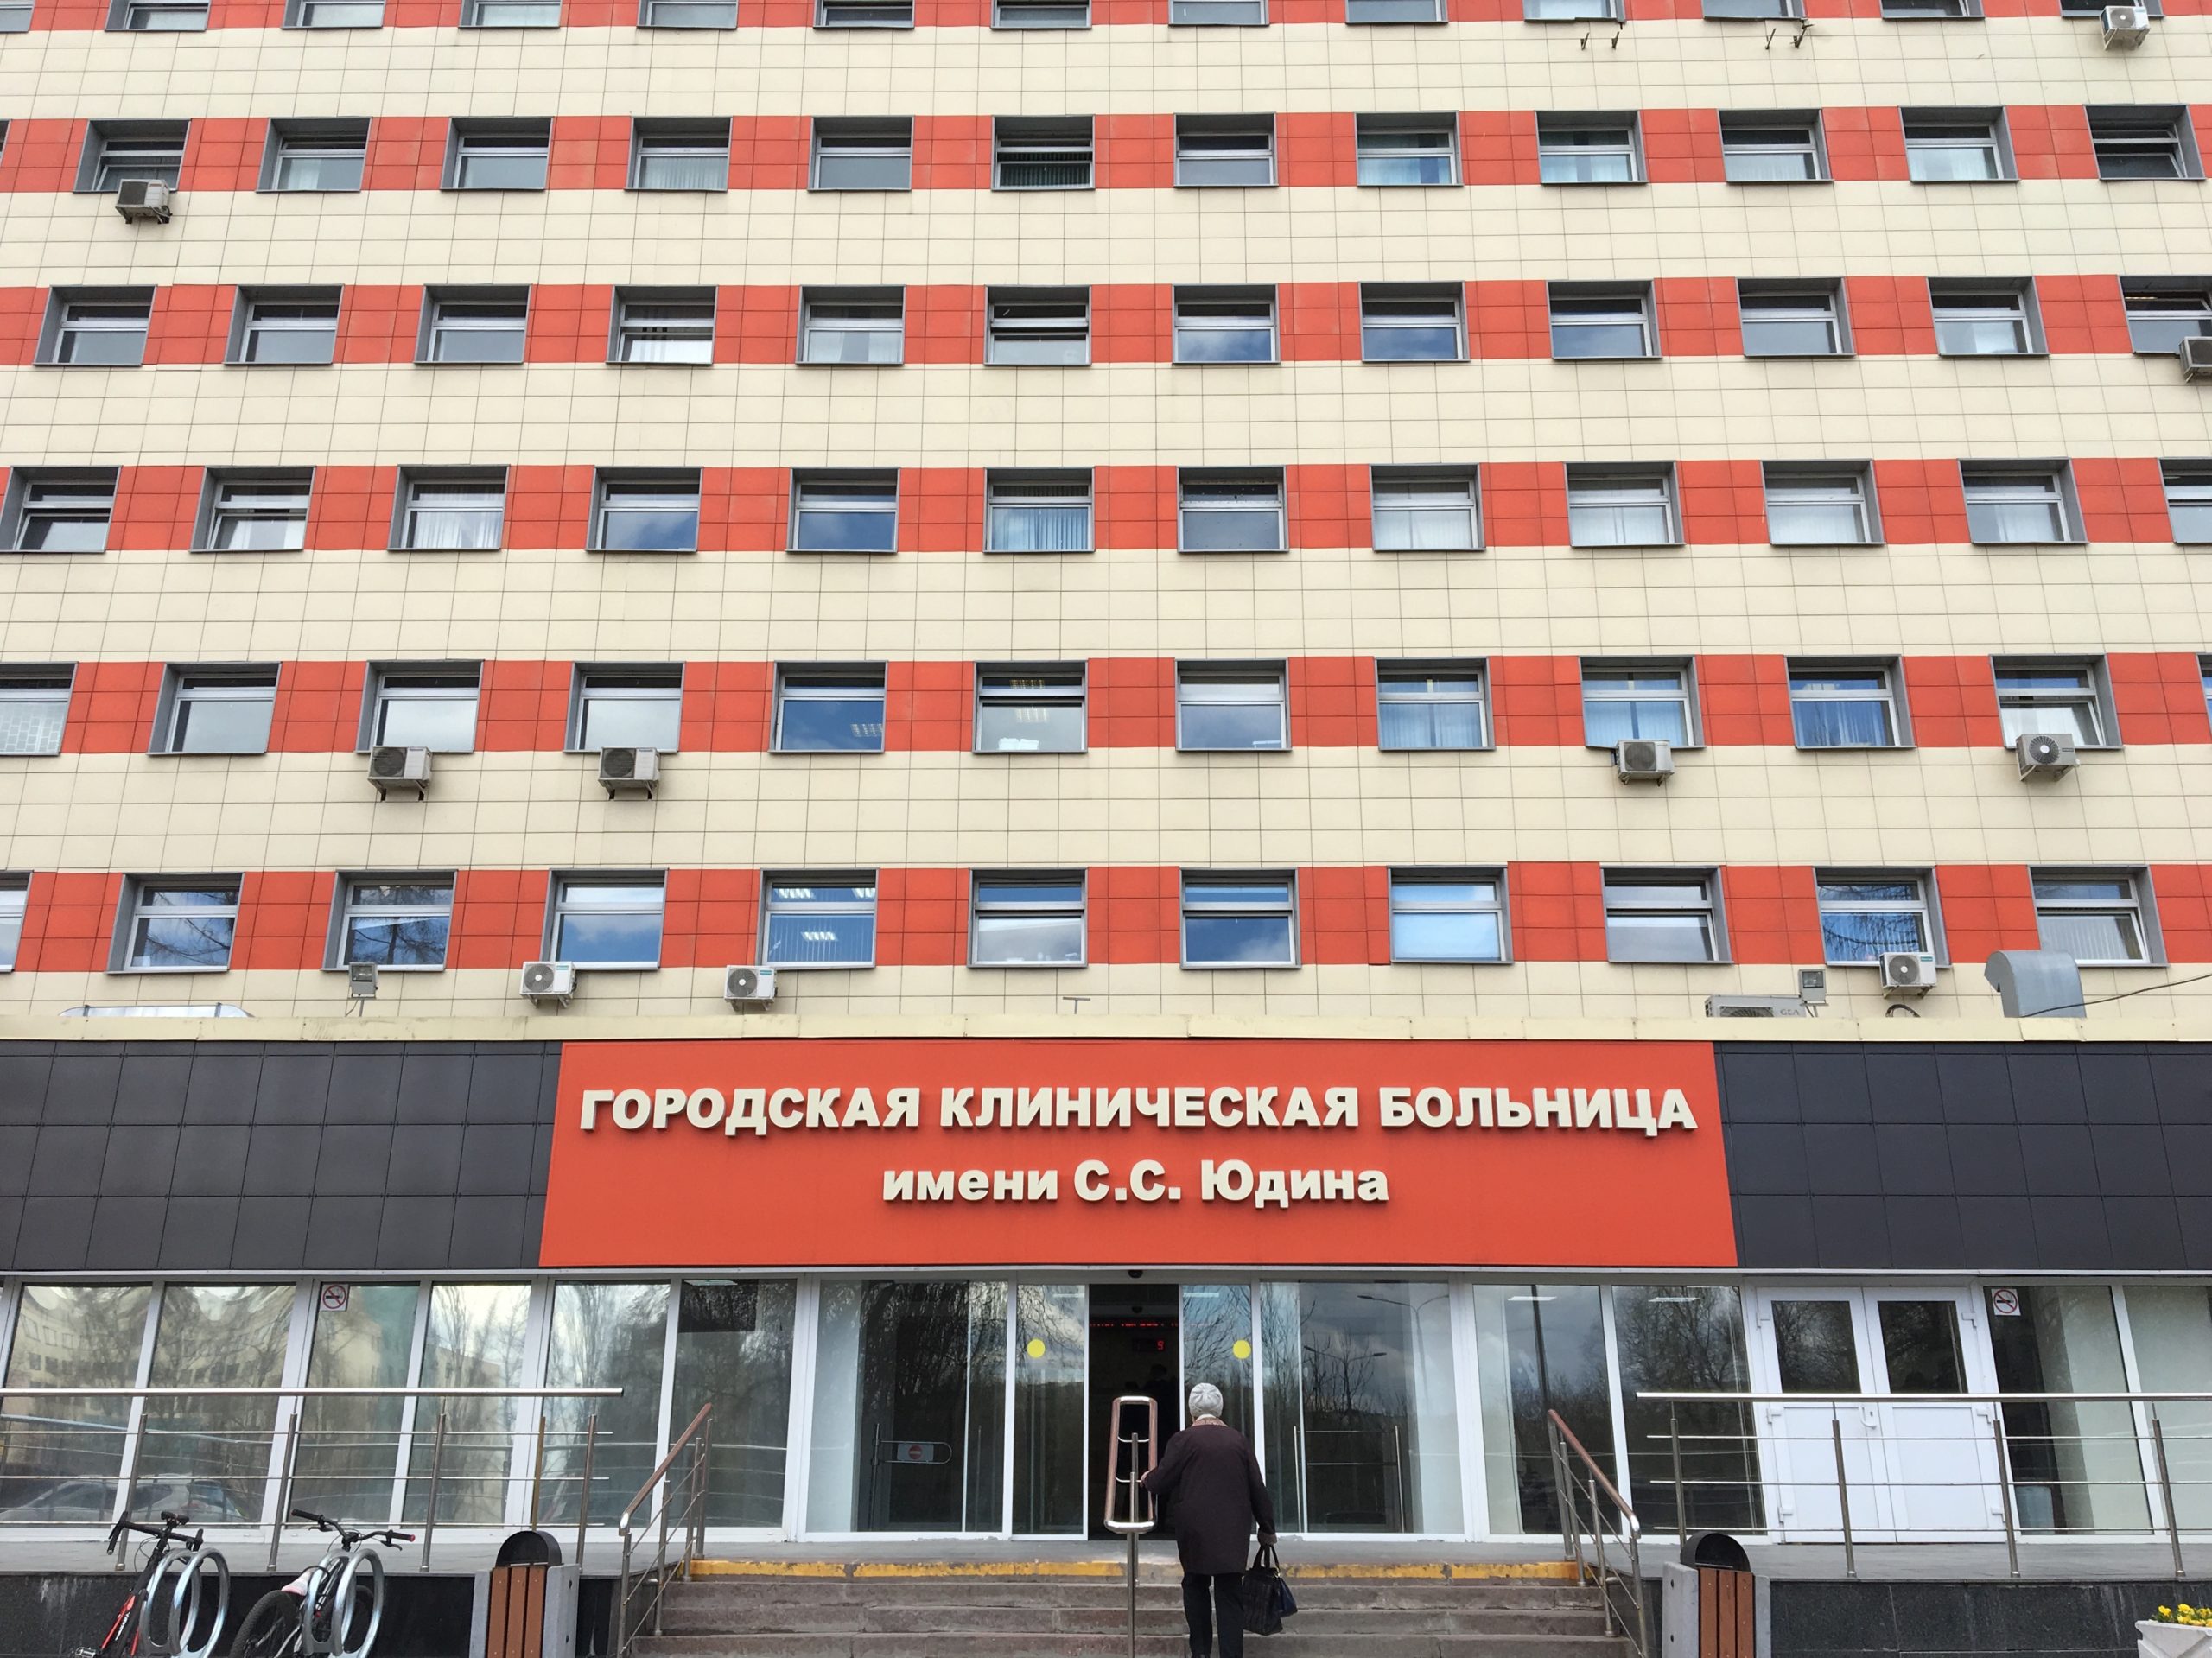 Горожанам представили проект благоустройства больницы имени Сергея Юдина